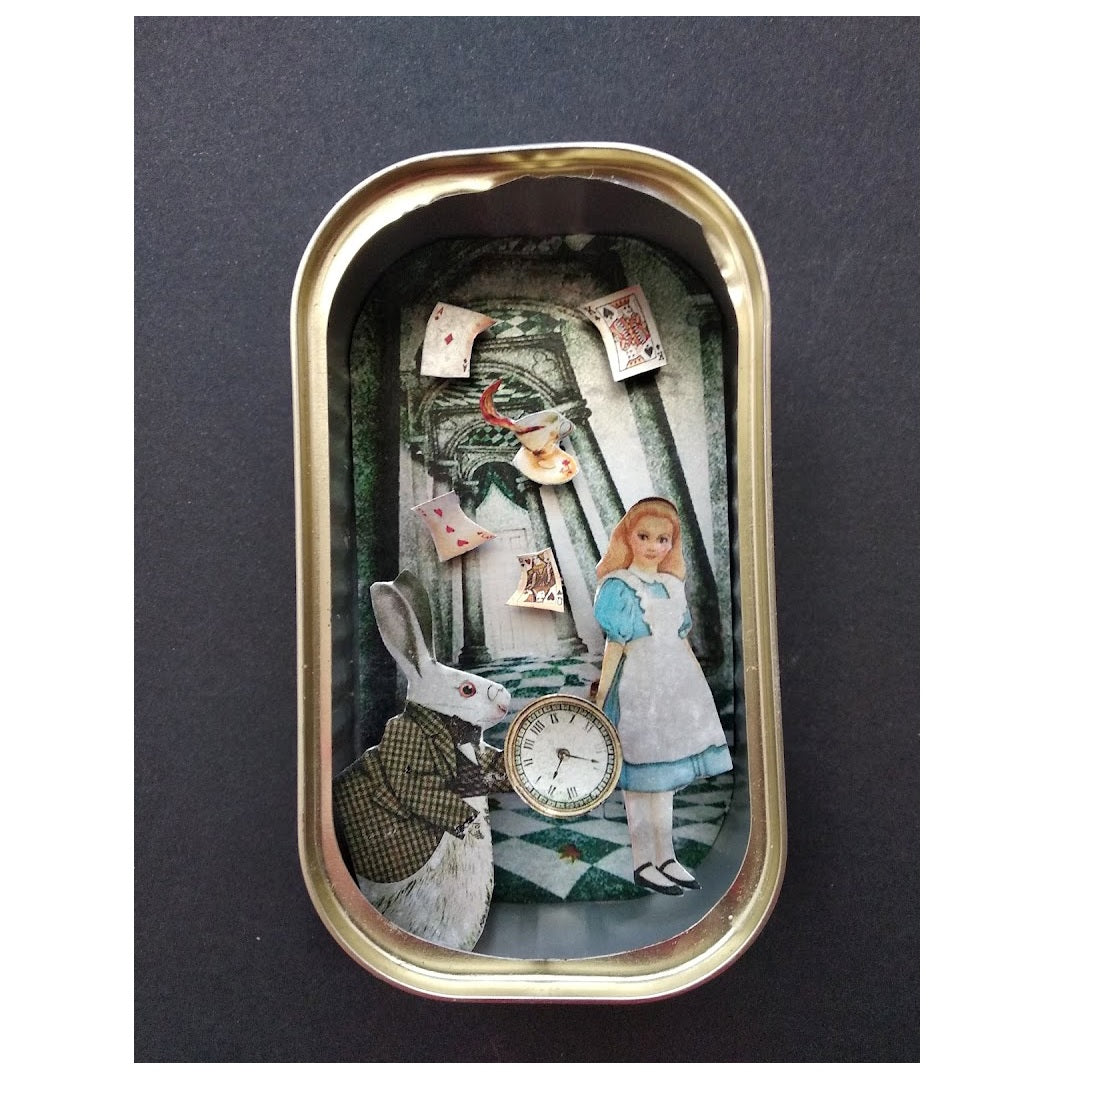  Arte en lata - Alicia en el País de las Maravillas - by desechorehecho - peliculas en latas de conserva - arte de metal